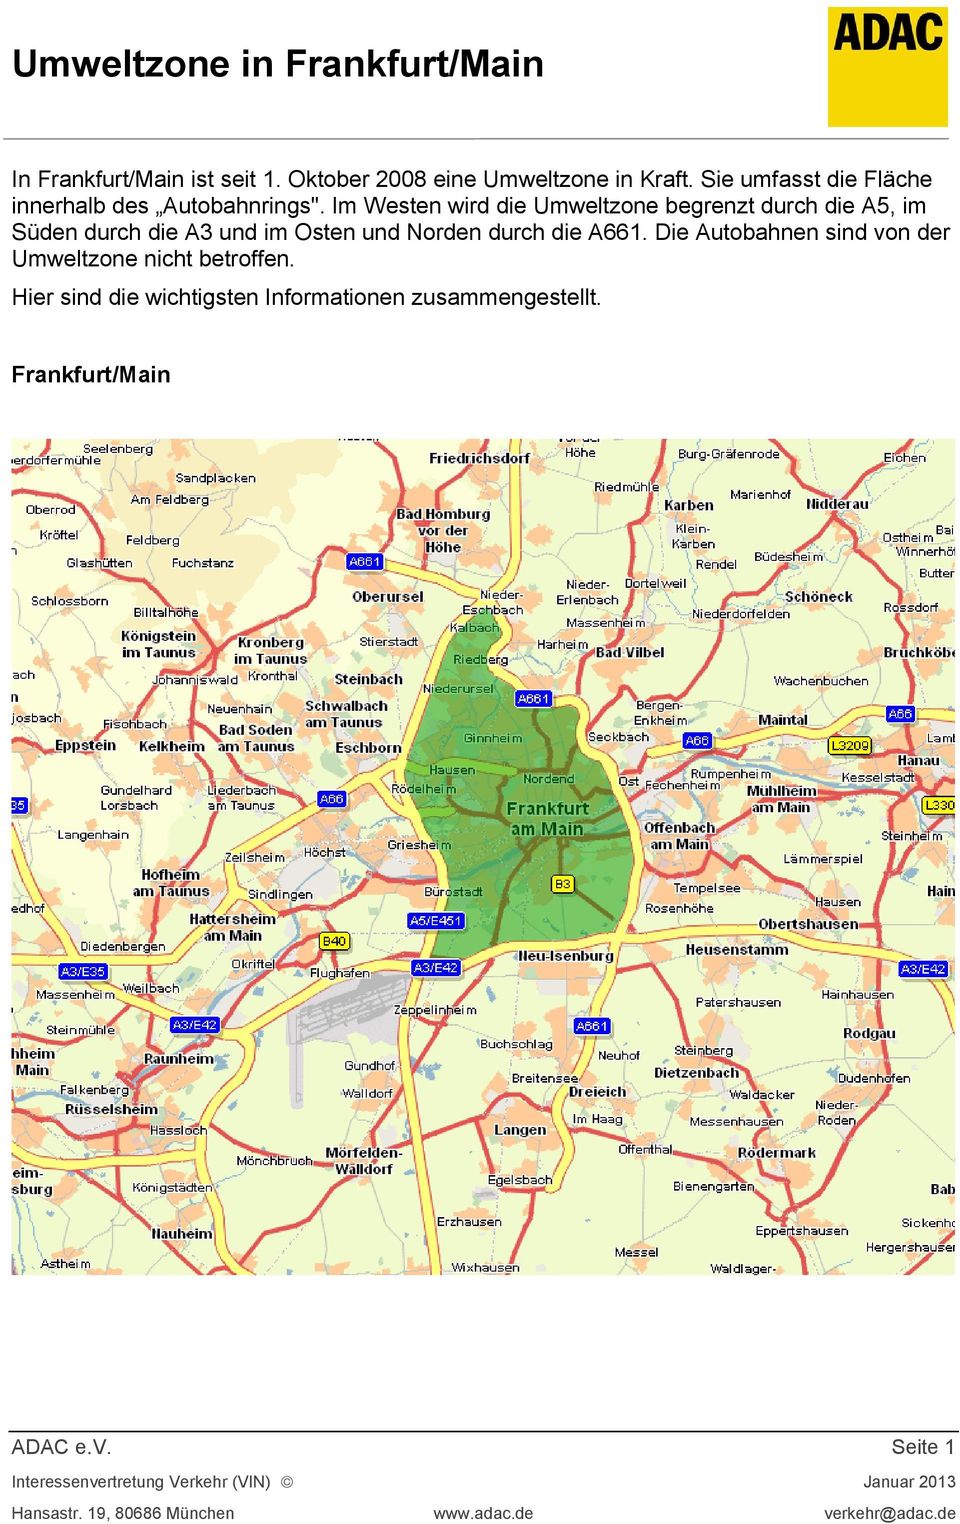 Im Westen wird die Umweltzone begrenzt durch die A5, im Süden durch die A3 und im Osten und Norden